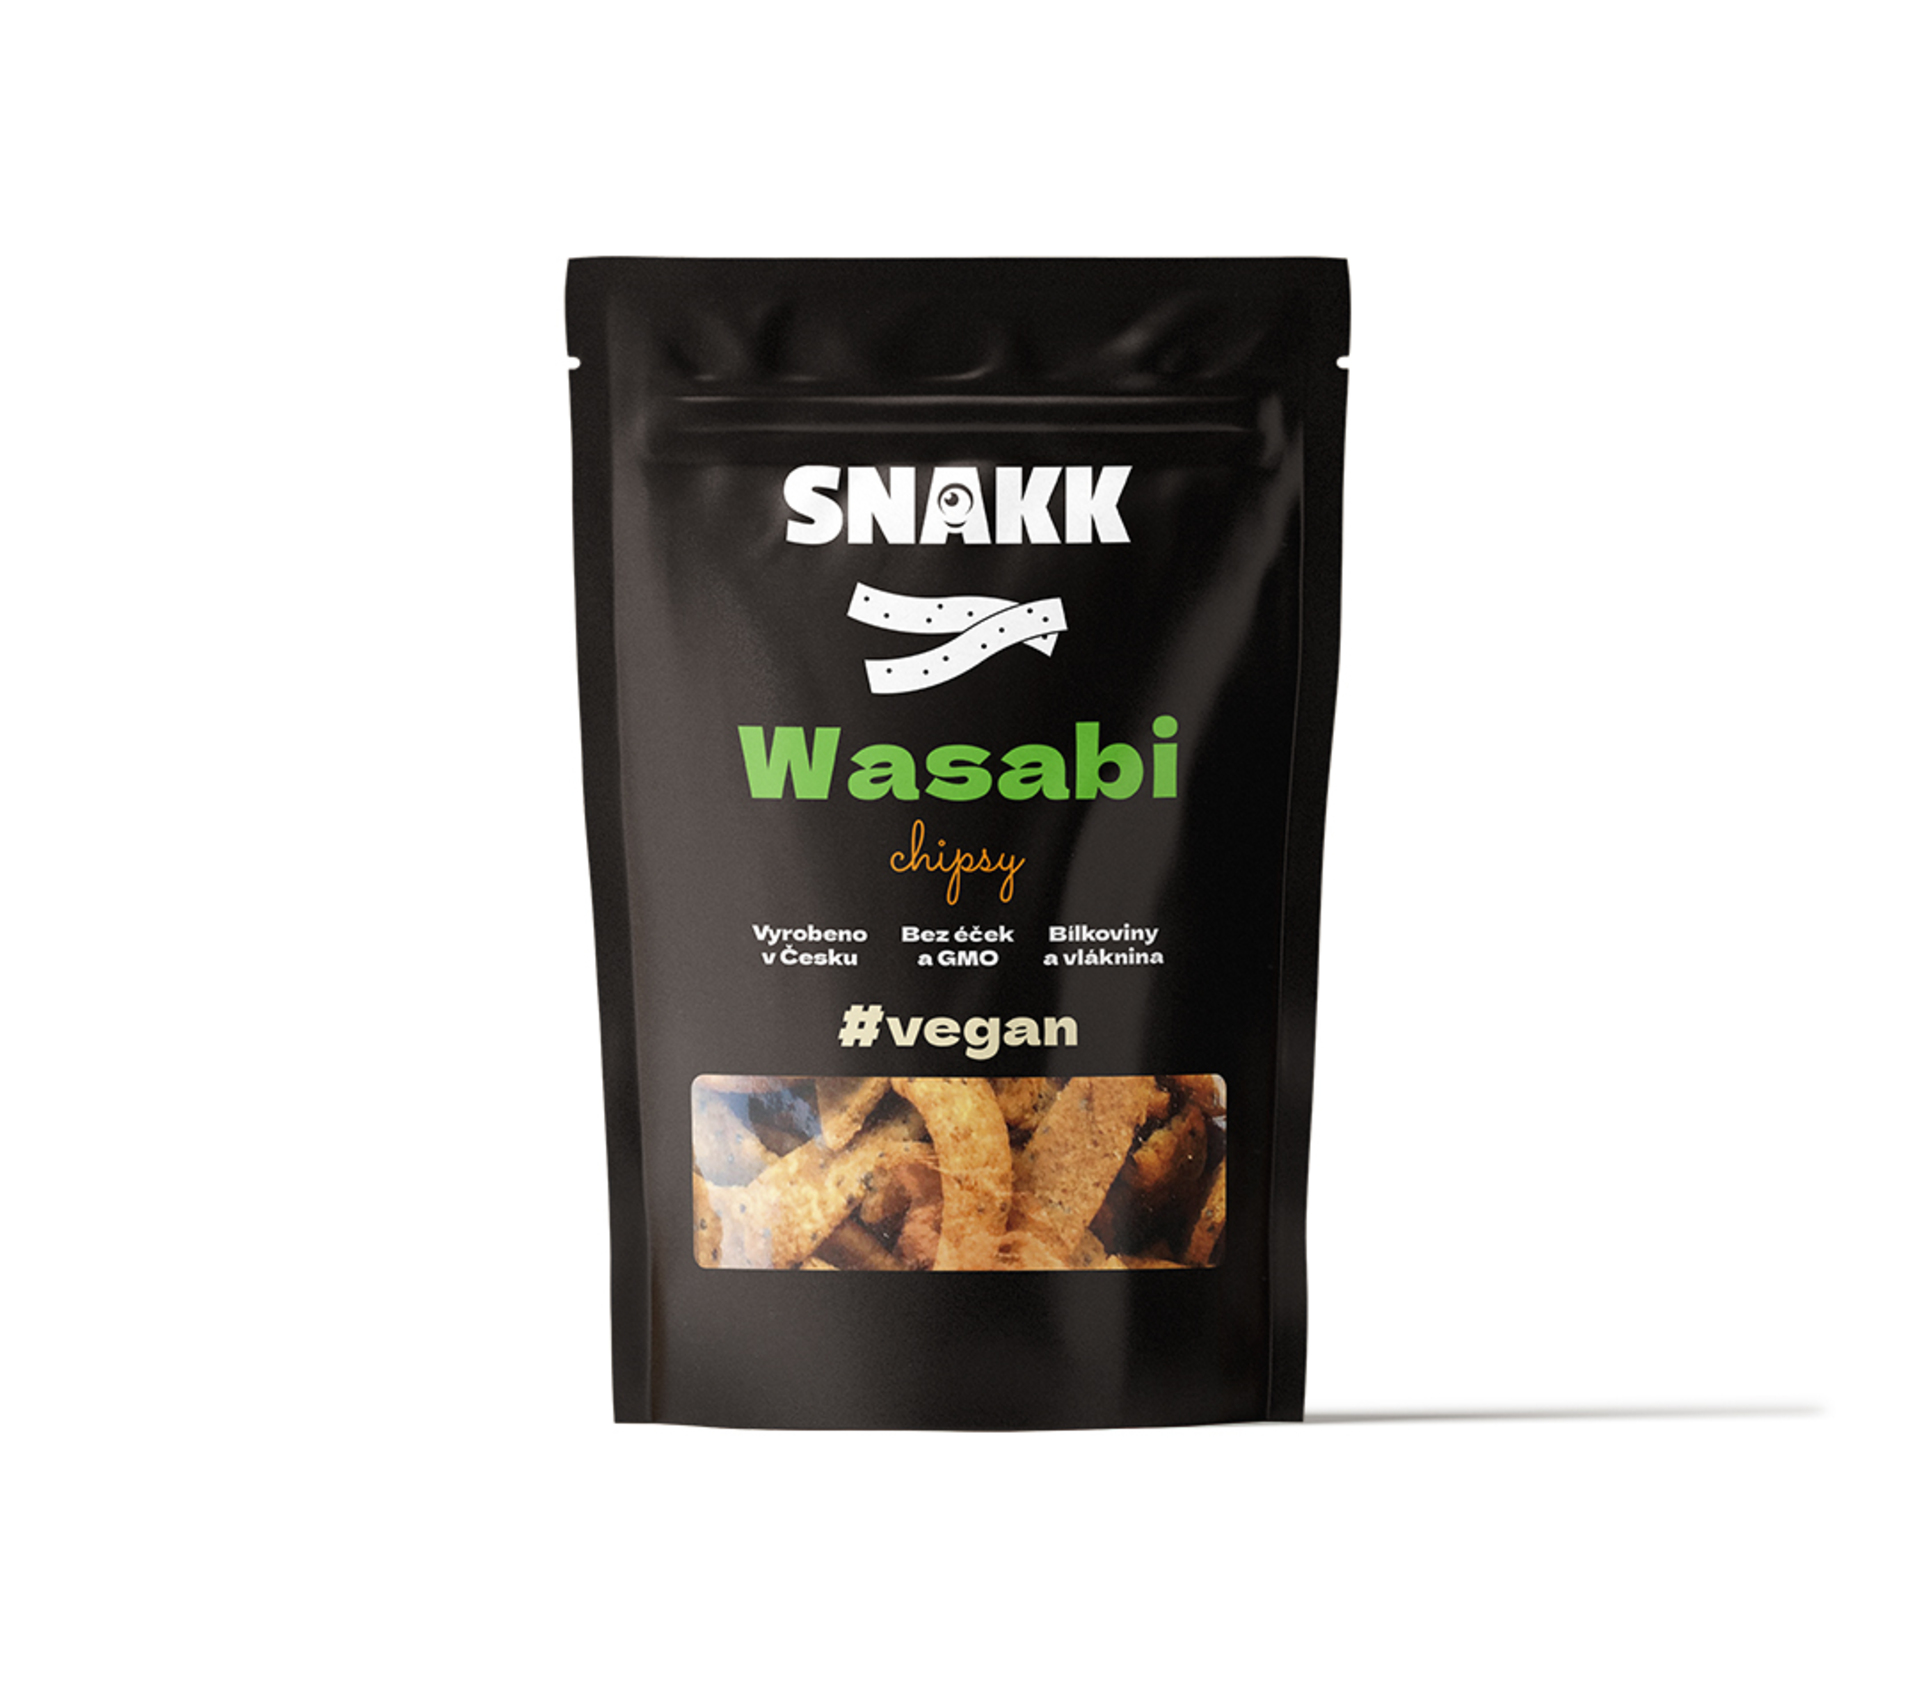 Snakk Wasabi chipsy 70 g - expirace